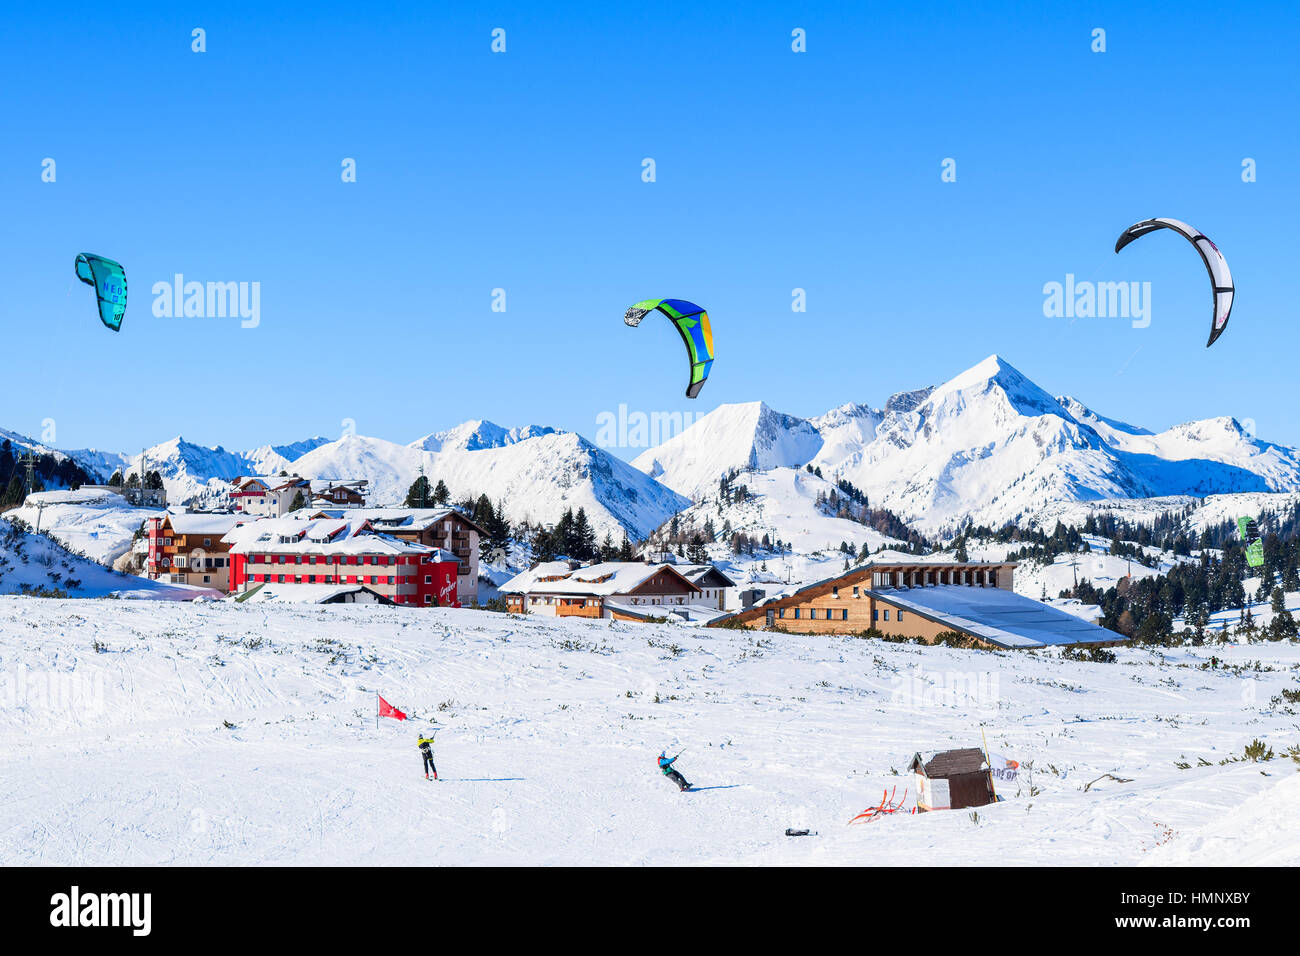 OBERTAUERN SKI RESORT, Österreich - 22. Januar 2017: Skifahrer mit Drachen fliegen im Skigebiet Obertauern im Salzburger Land, Österreichische Alpen. Stockfoto